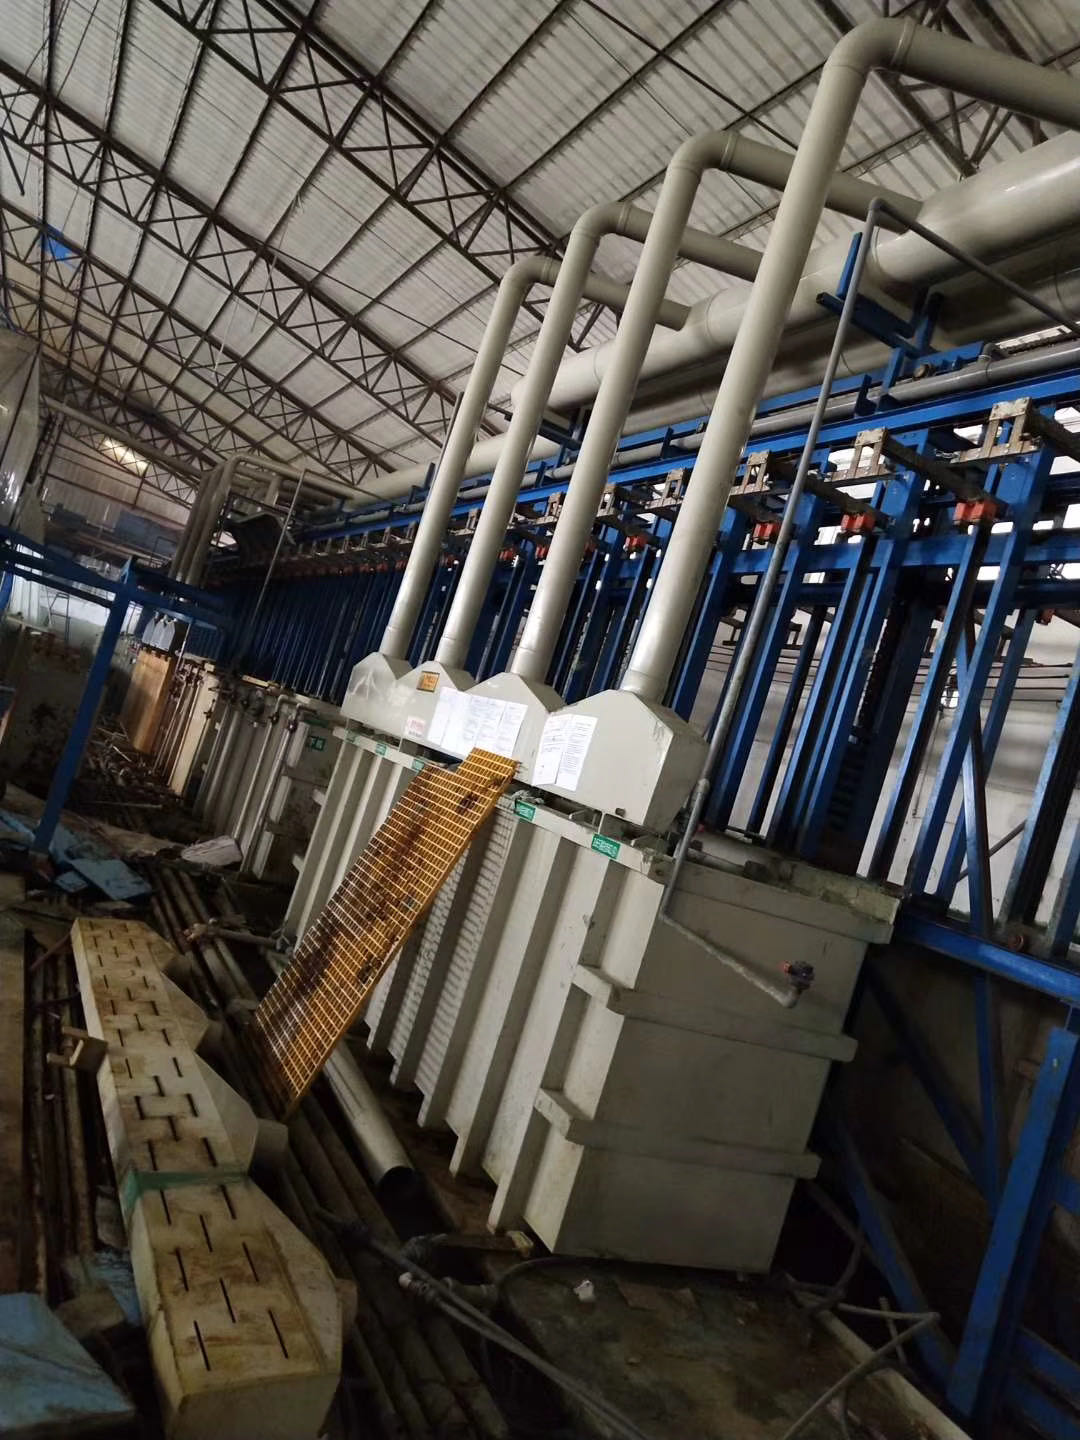 东莞地区提供二手设备回收行情/钢结构厂房拆除回收